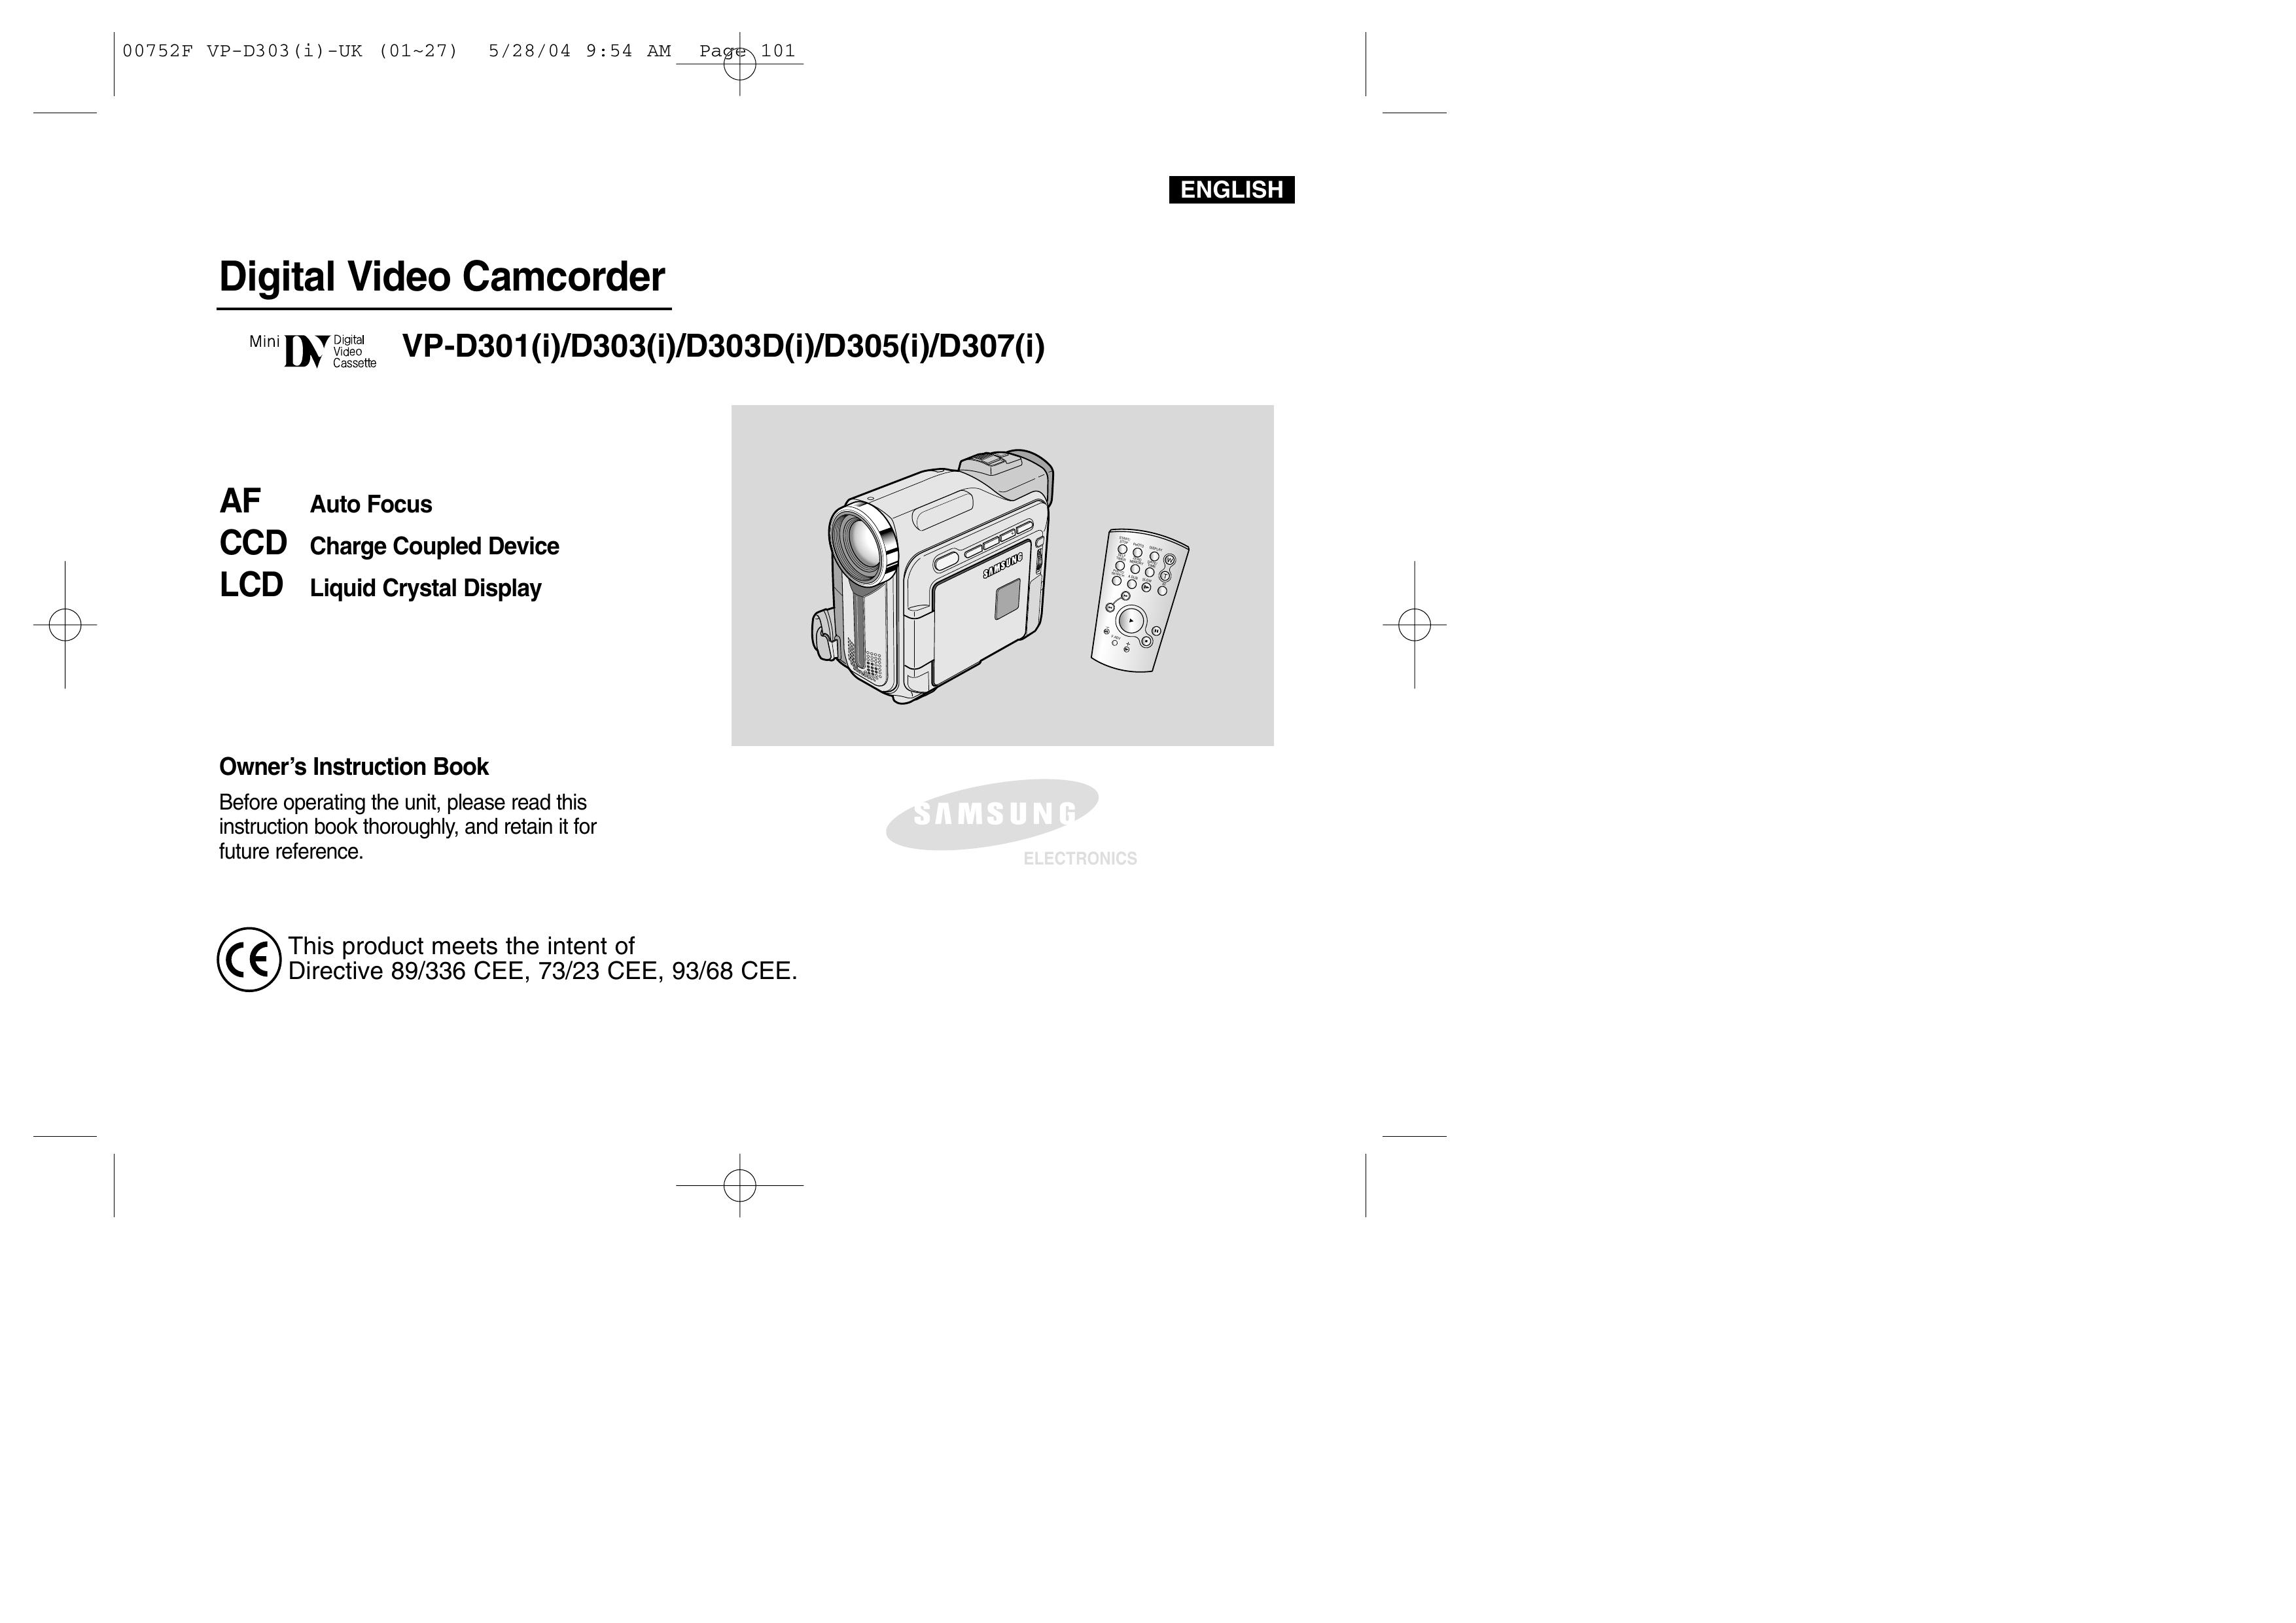 Samsung D307(i) Camcorder User Manual